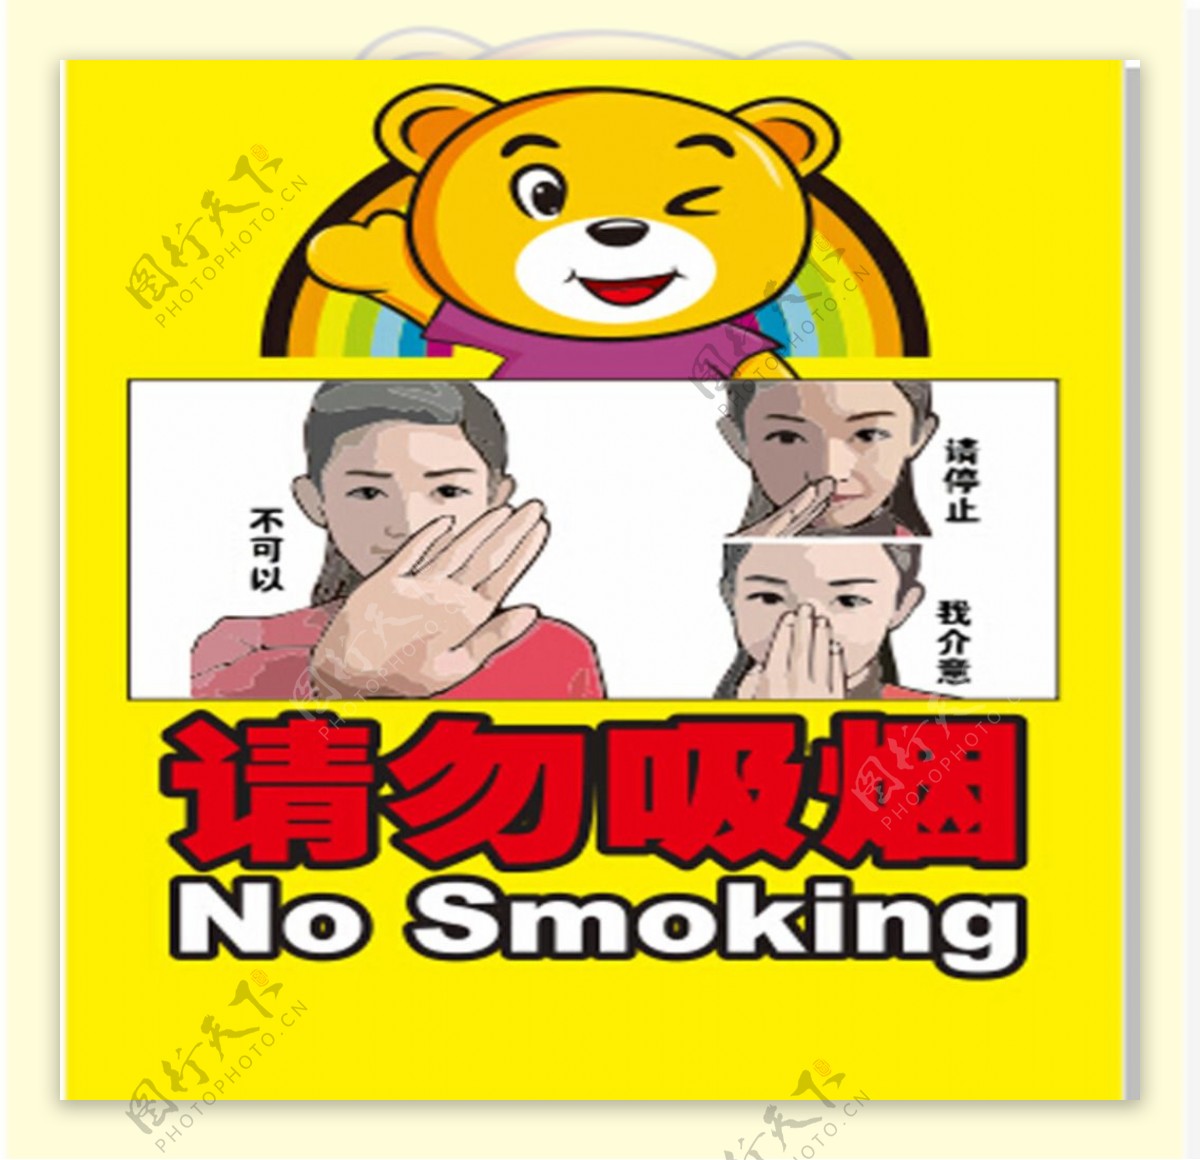 6.1禁烟条例手势图禁止吸烟图片